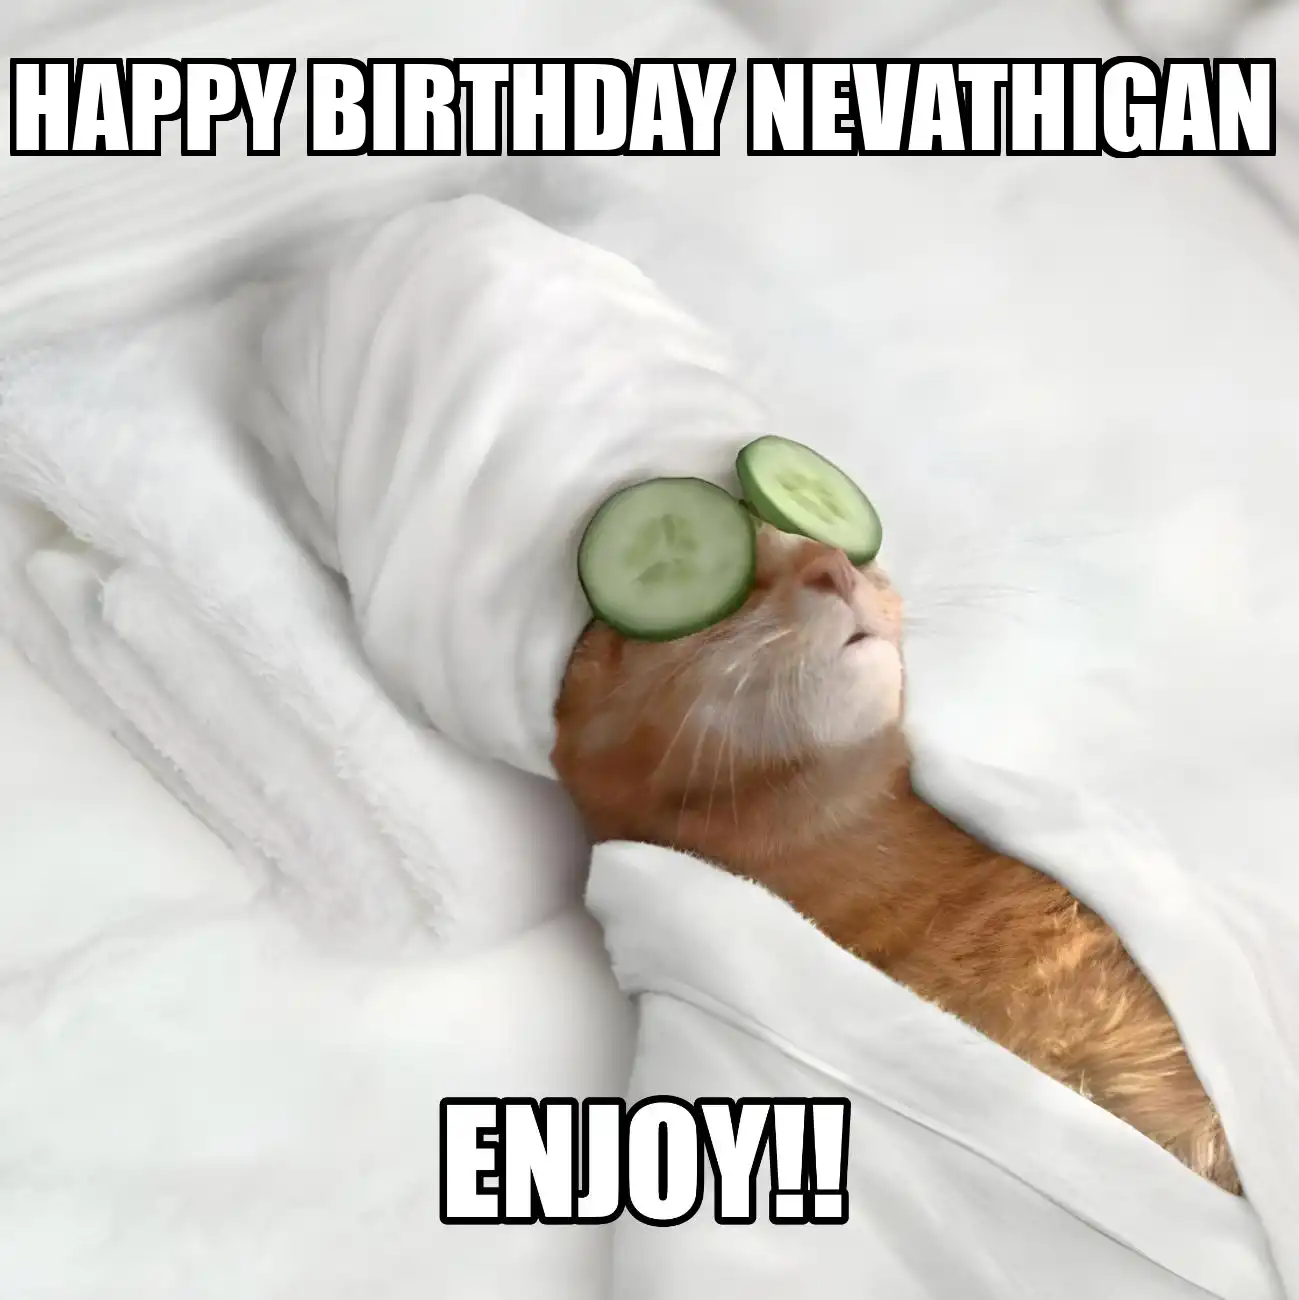 Happy Birthday Nevathigan Enjoy Cat Meme